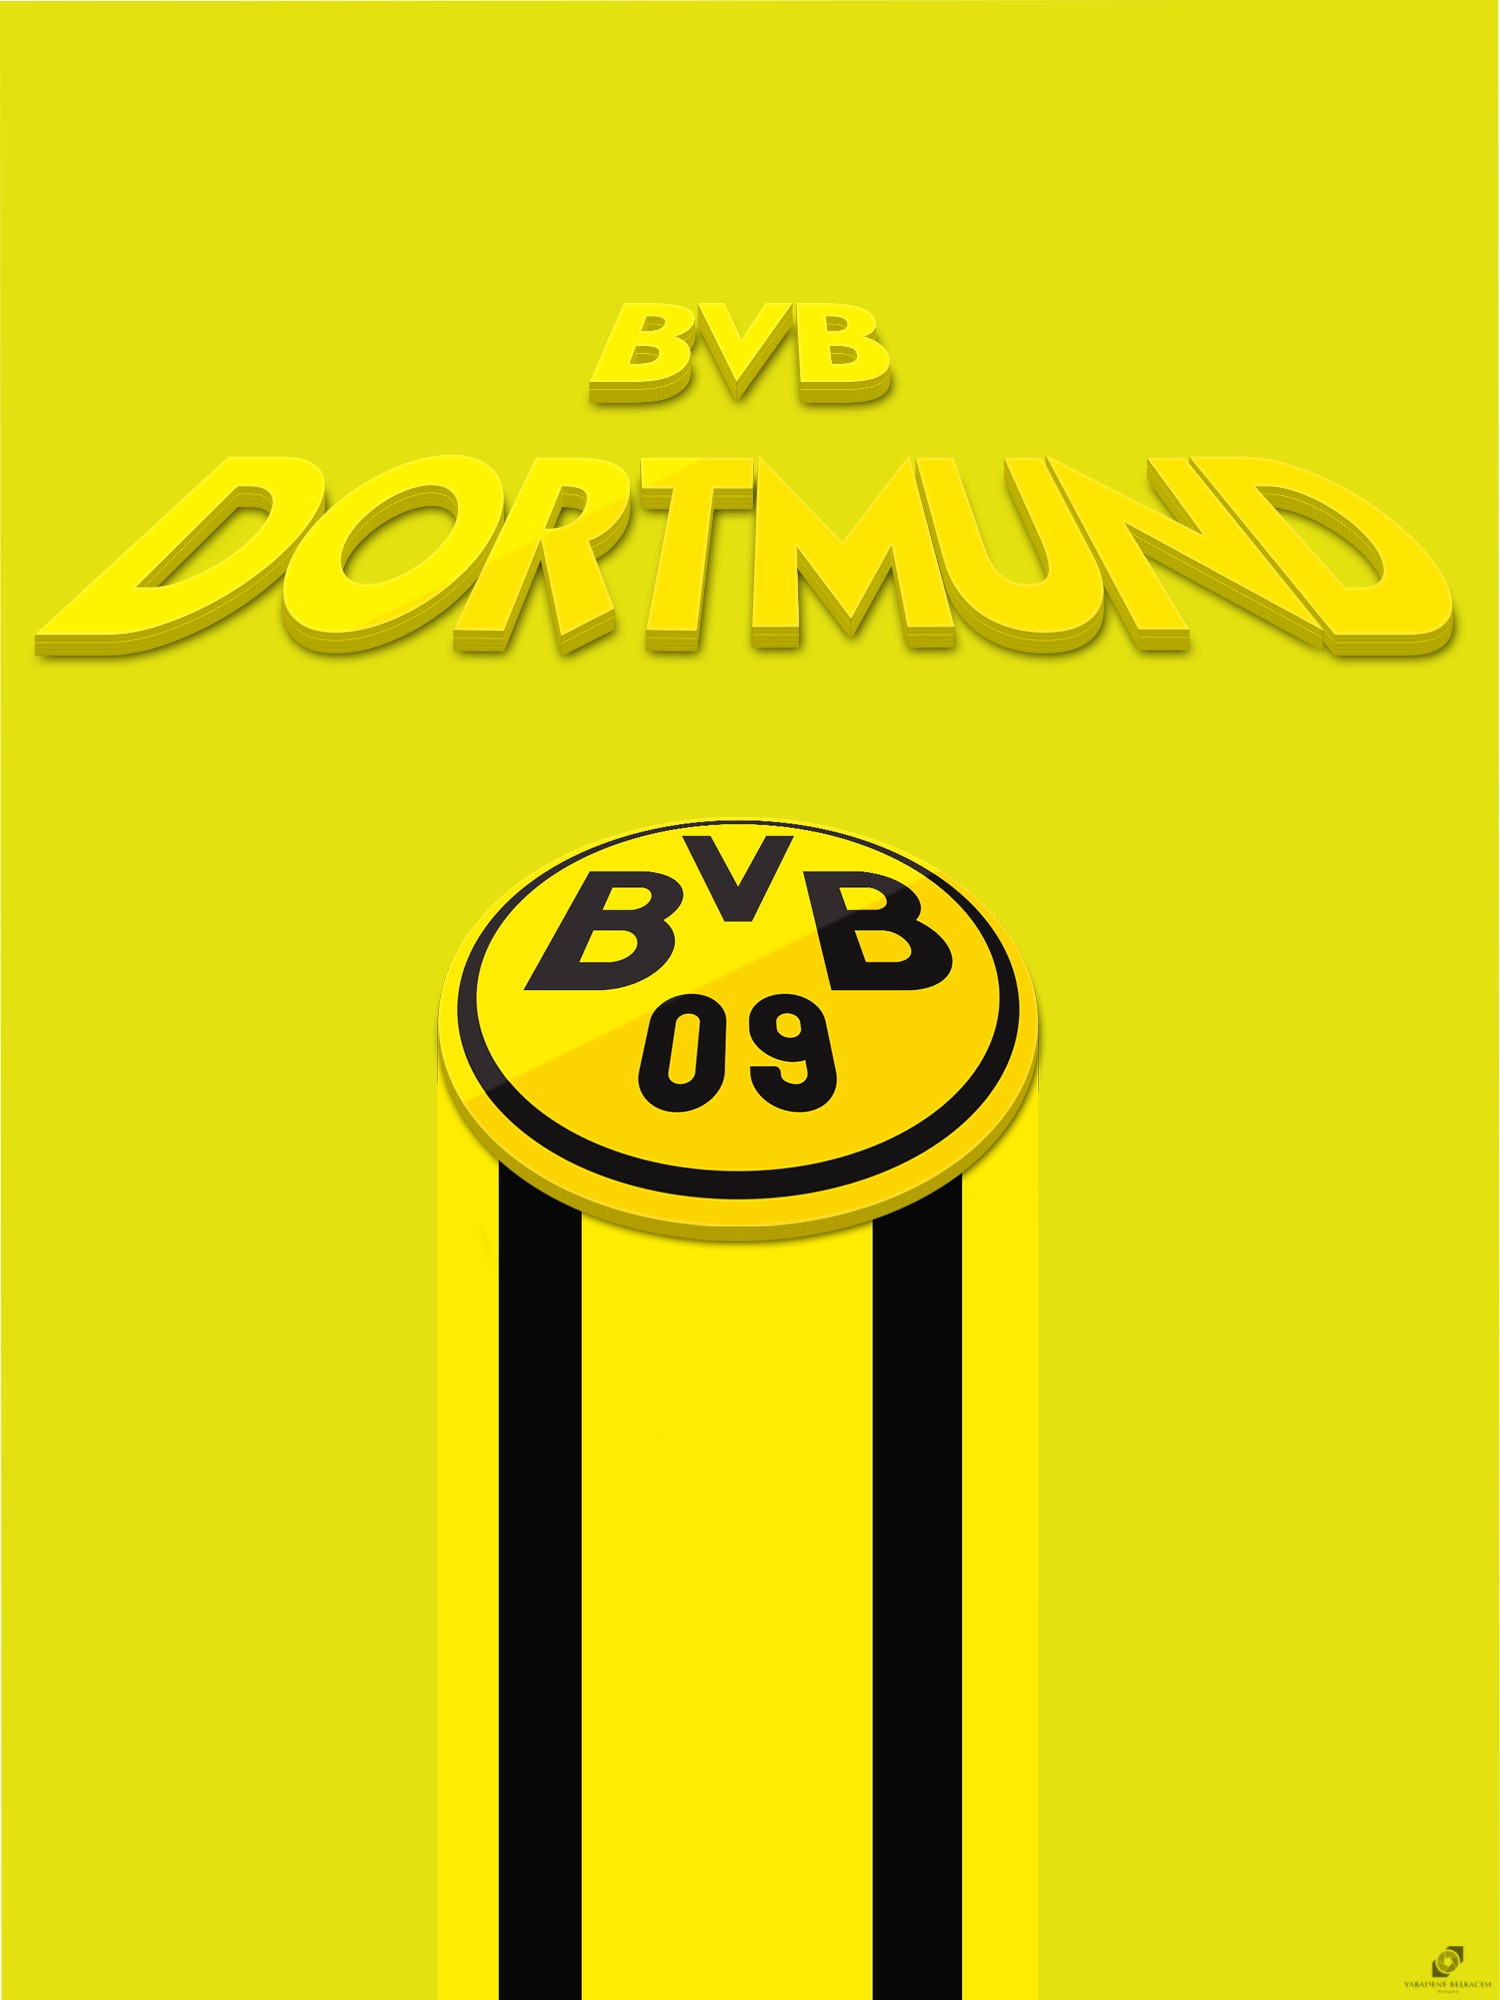 BVB Borussia Dortmund Germany Soccer Bundesliga 1500x2000